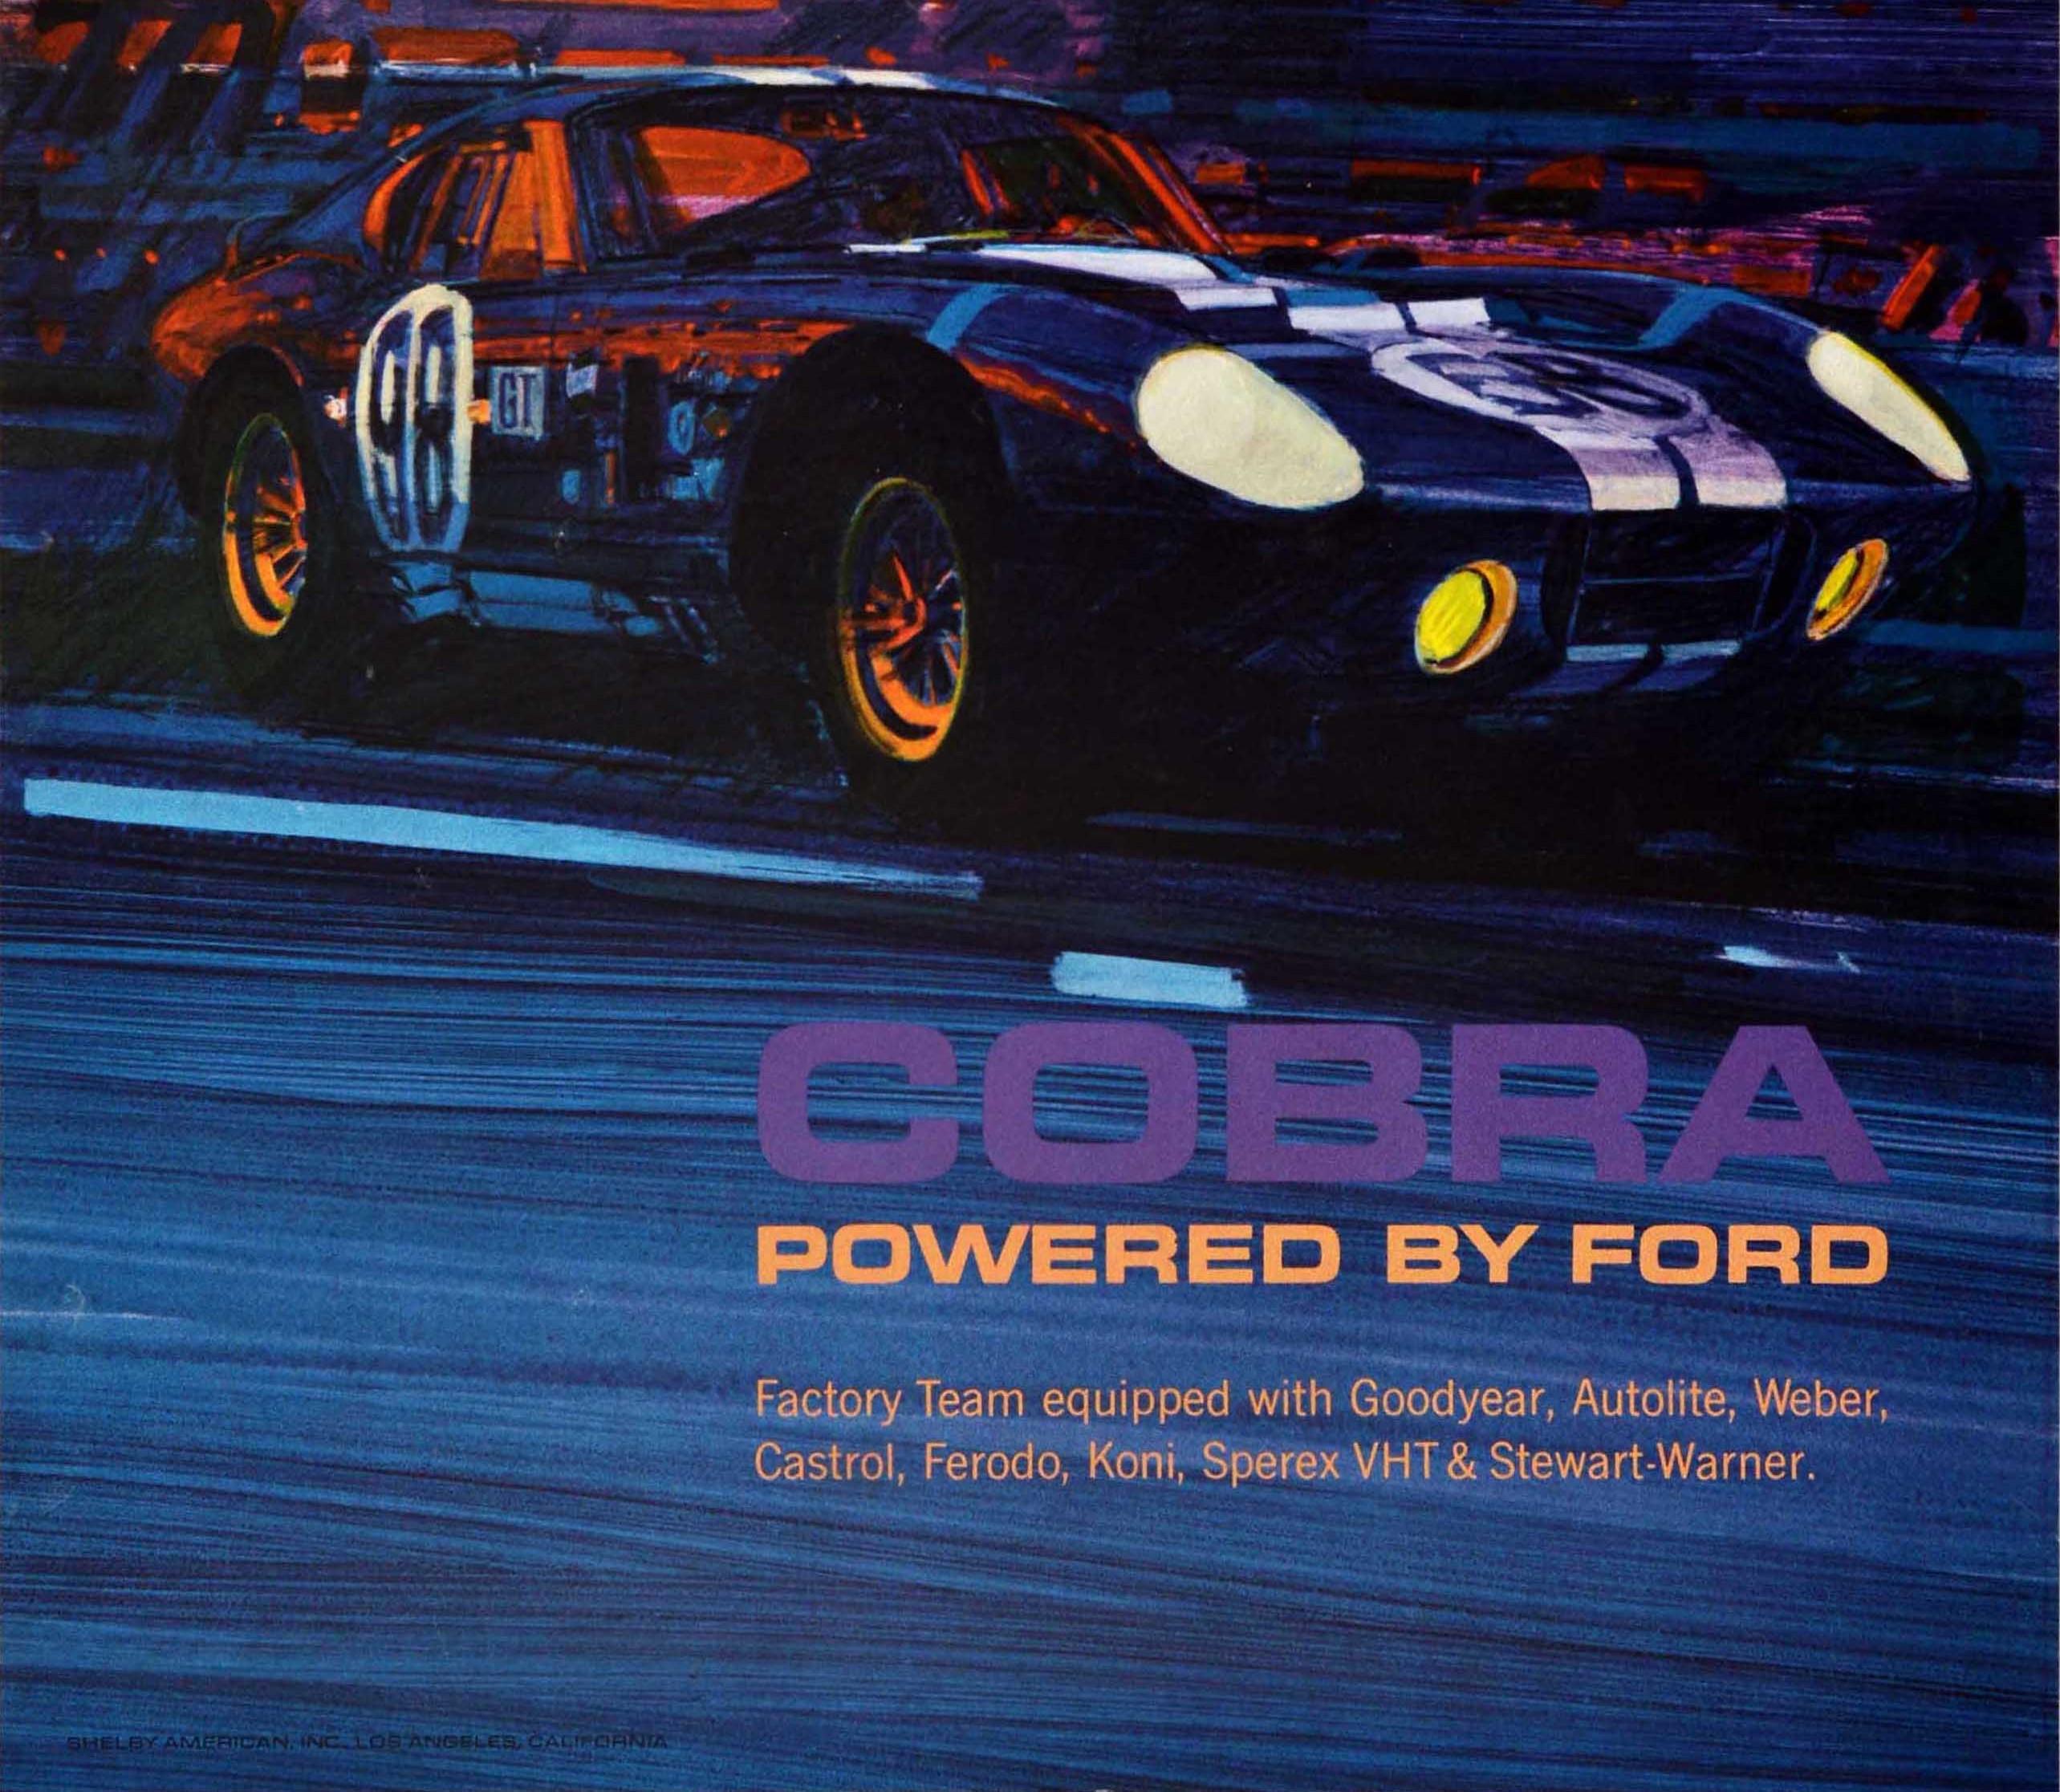 vintage racing posters